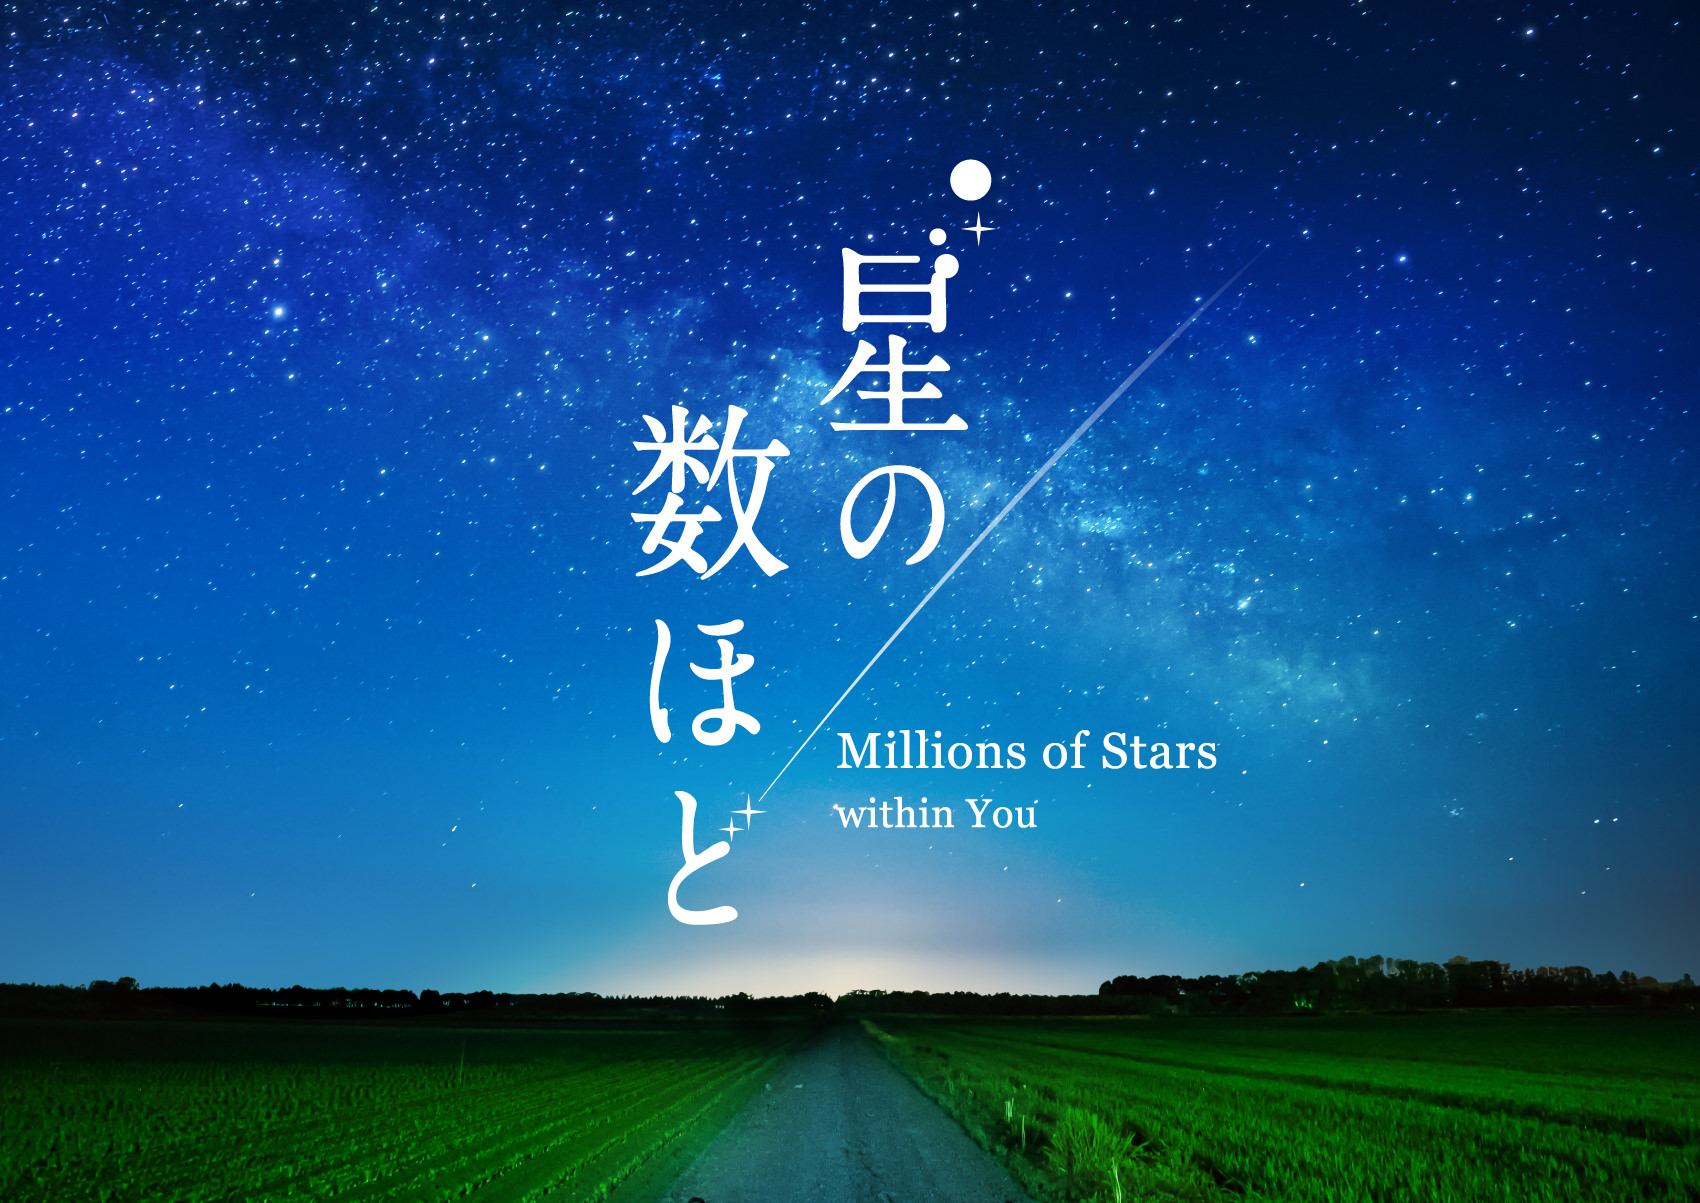 2020年3月20日よりプラネタリウム“満天”で上映開始
『星の数ほど』
あの名曲をプラネタリウムで！ナレーションは駒田航に決定！